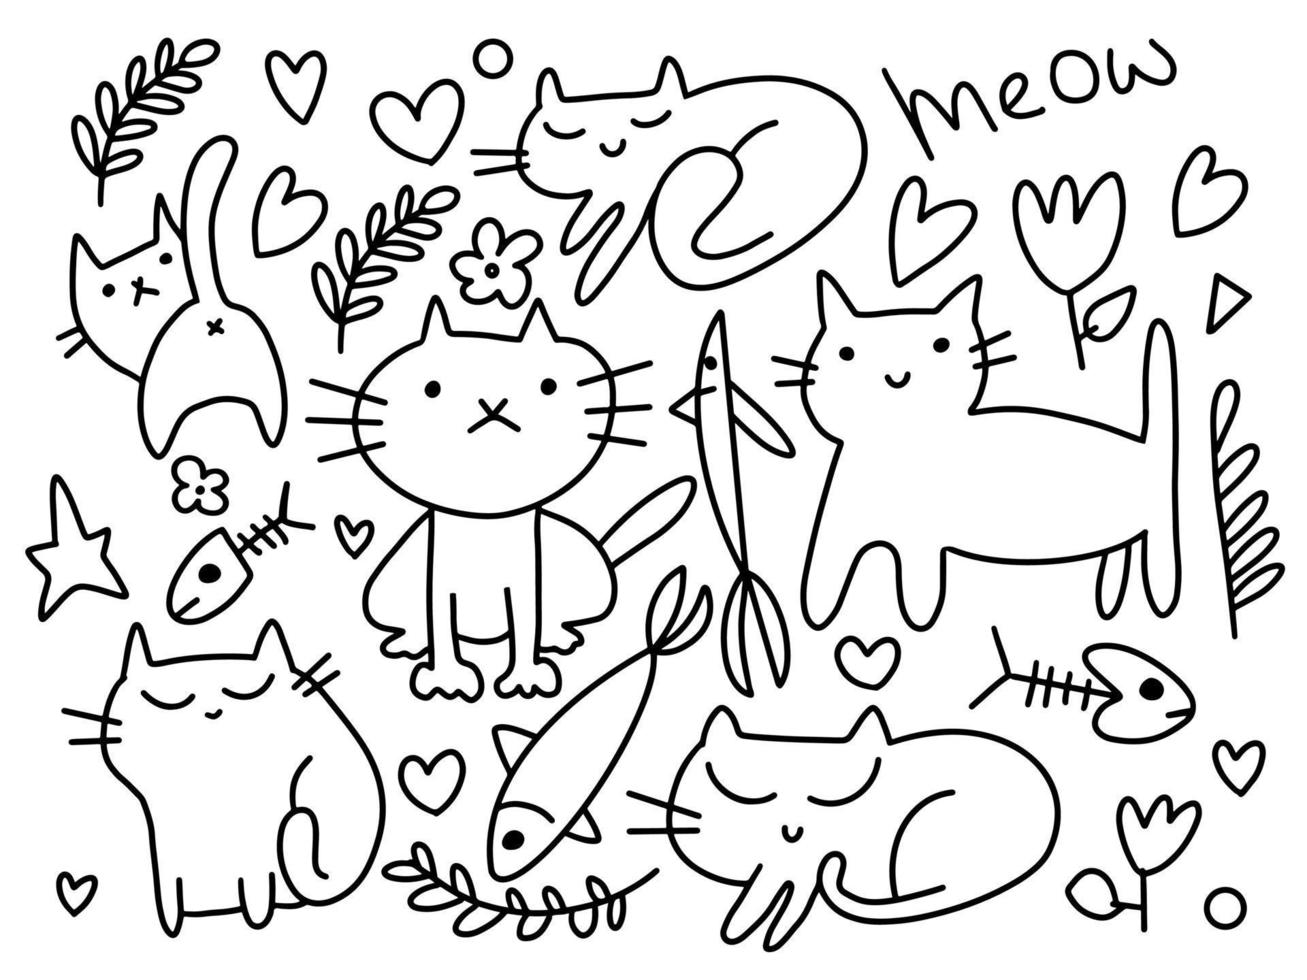 insieme vettoriale di gatti ed elementi di doodle. gatti divertenti disegnati a mano. animali illustrazione vettoriale con adorabili gattini.